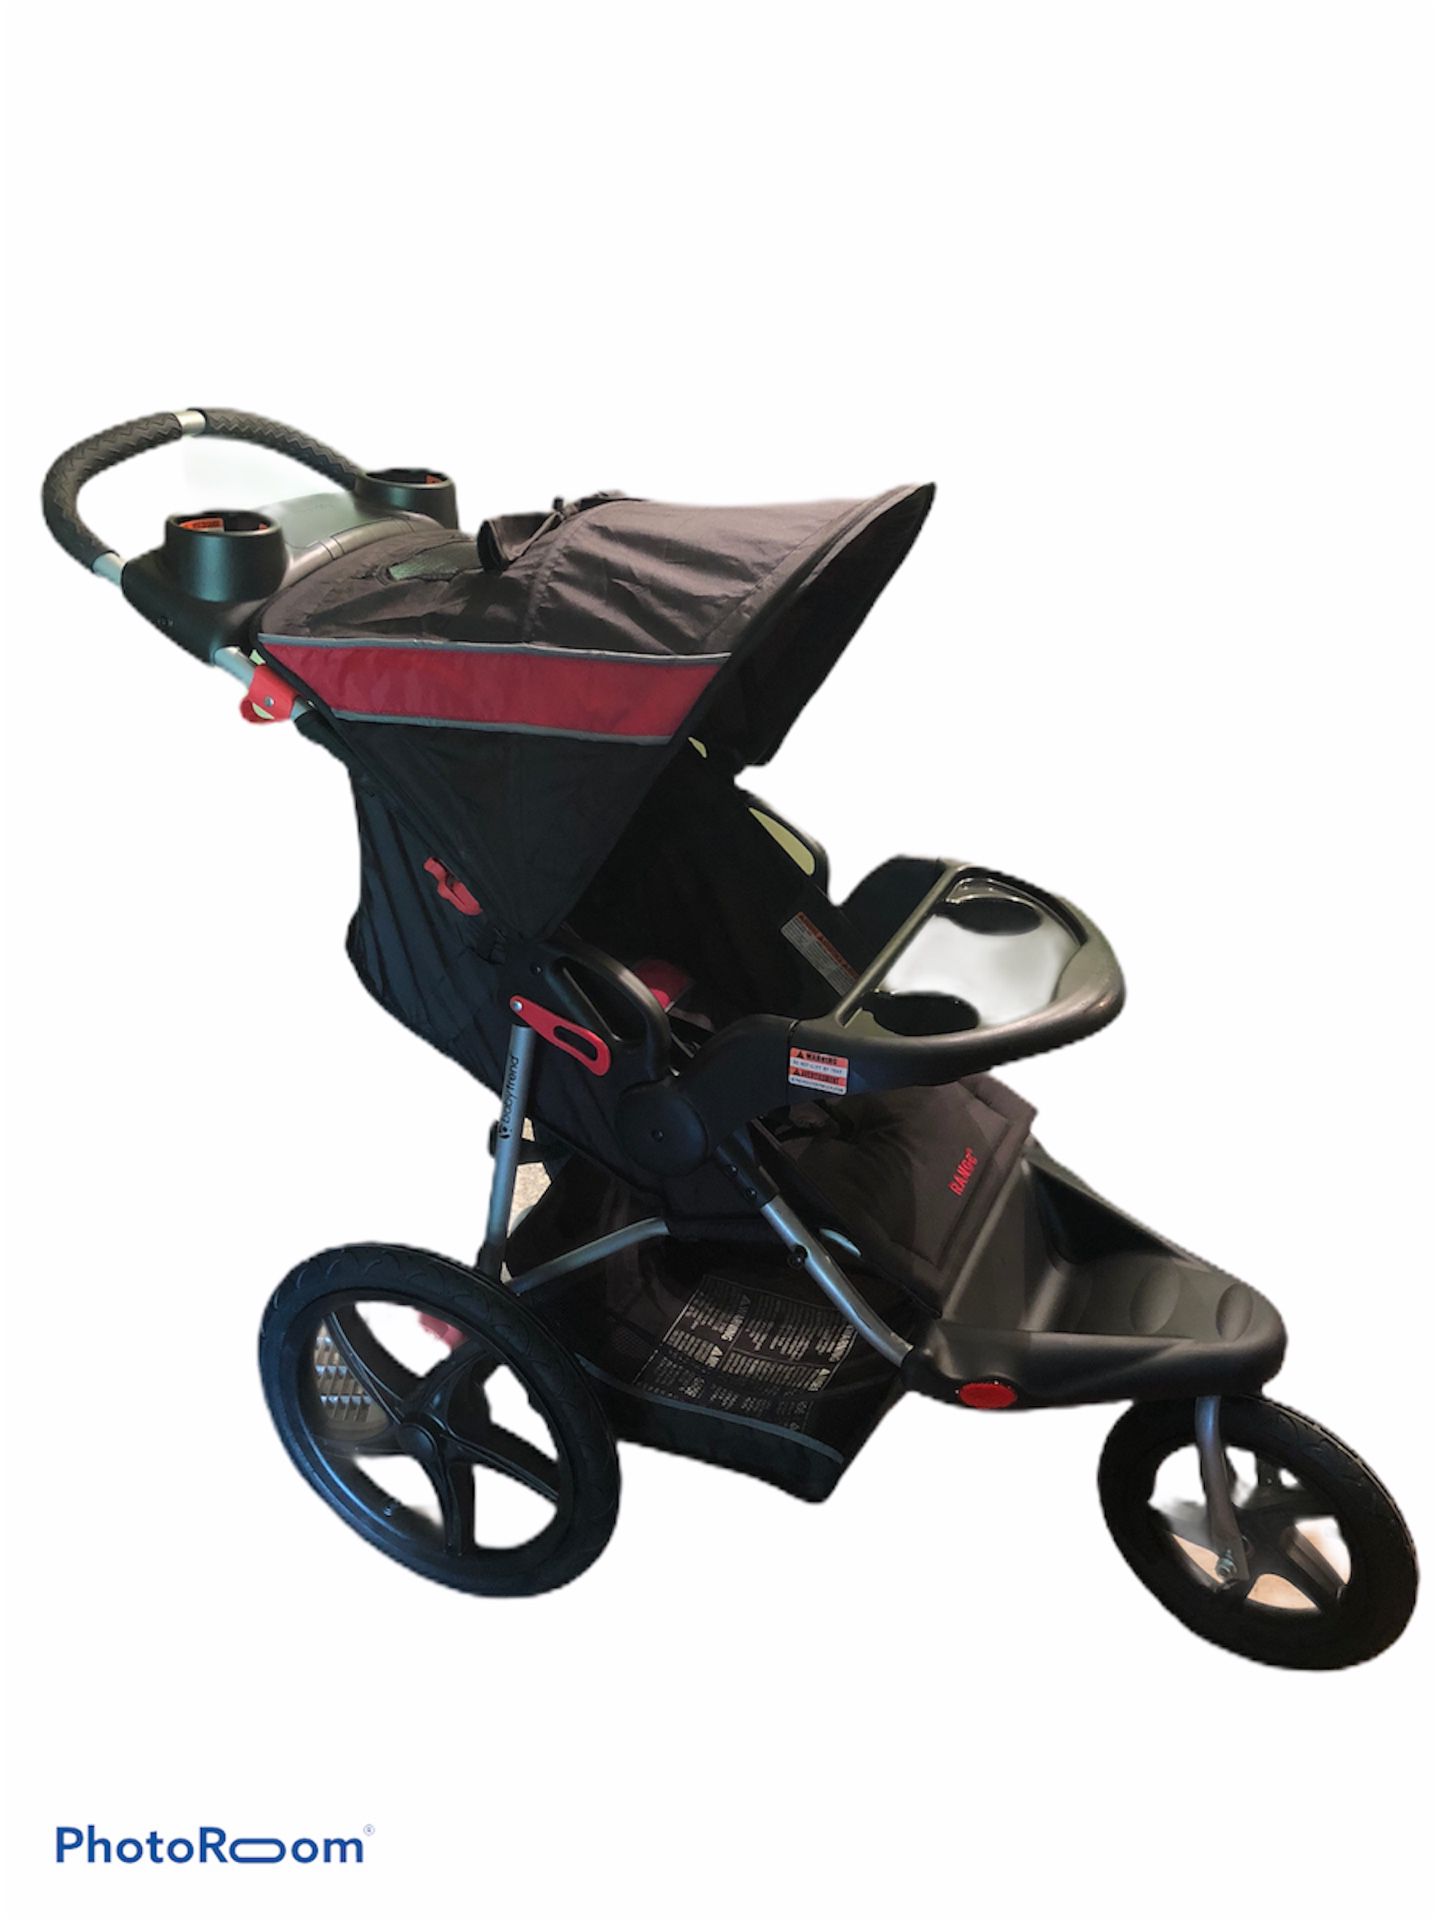 BabyTrend Range Jogging Stroller Foldable All-Terrain 3 Wheel Front Swivel